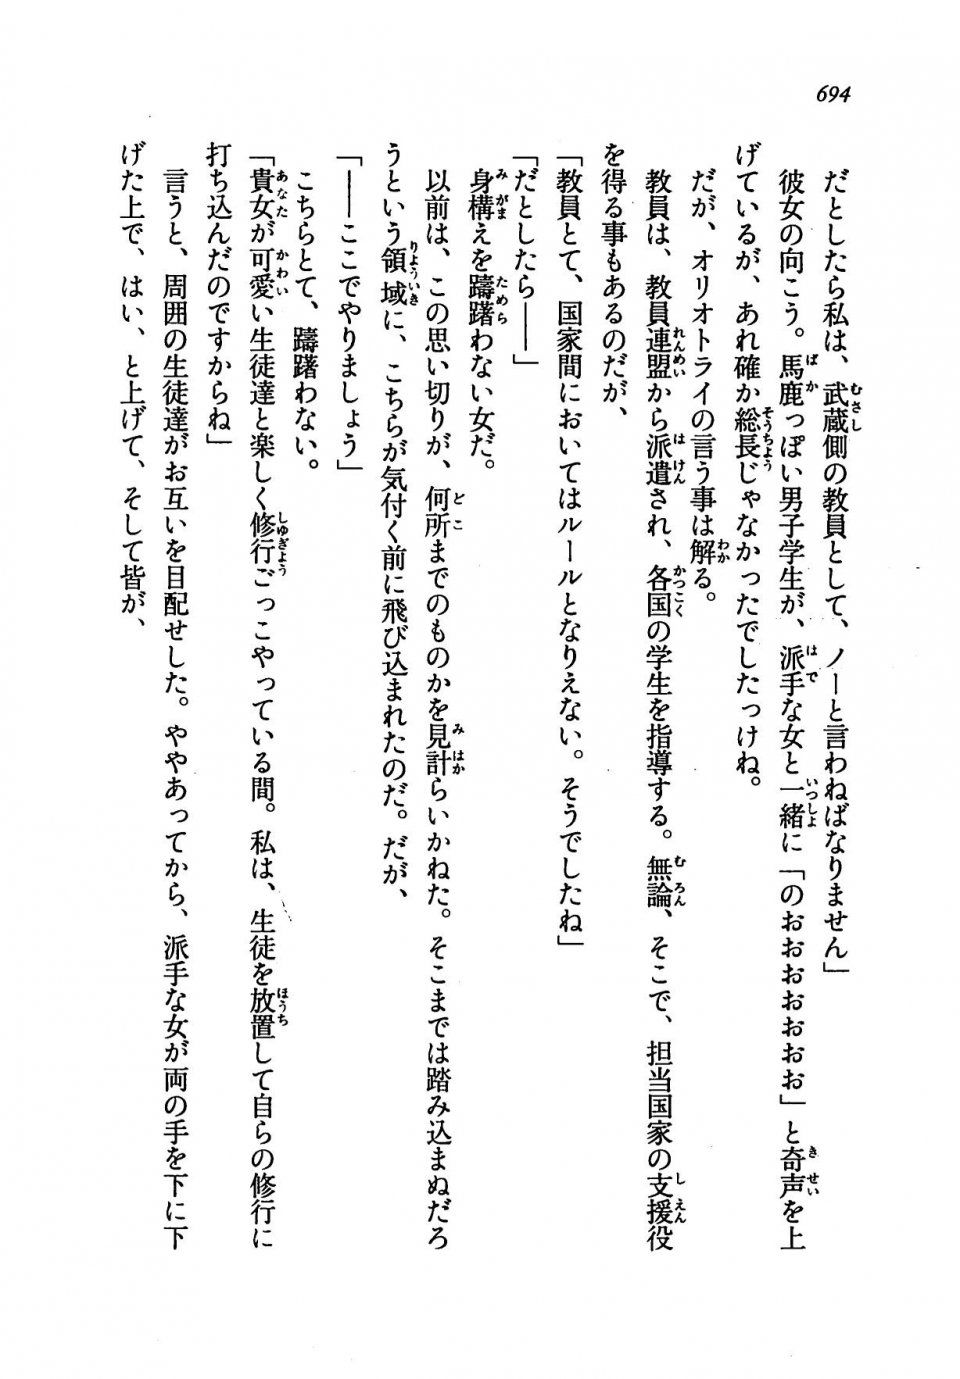 Kyoukai Senjou no Horizon LN Vol 19(8A) - Photo #694